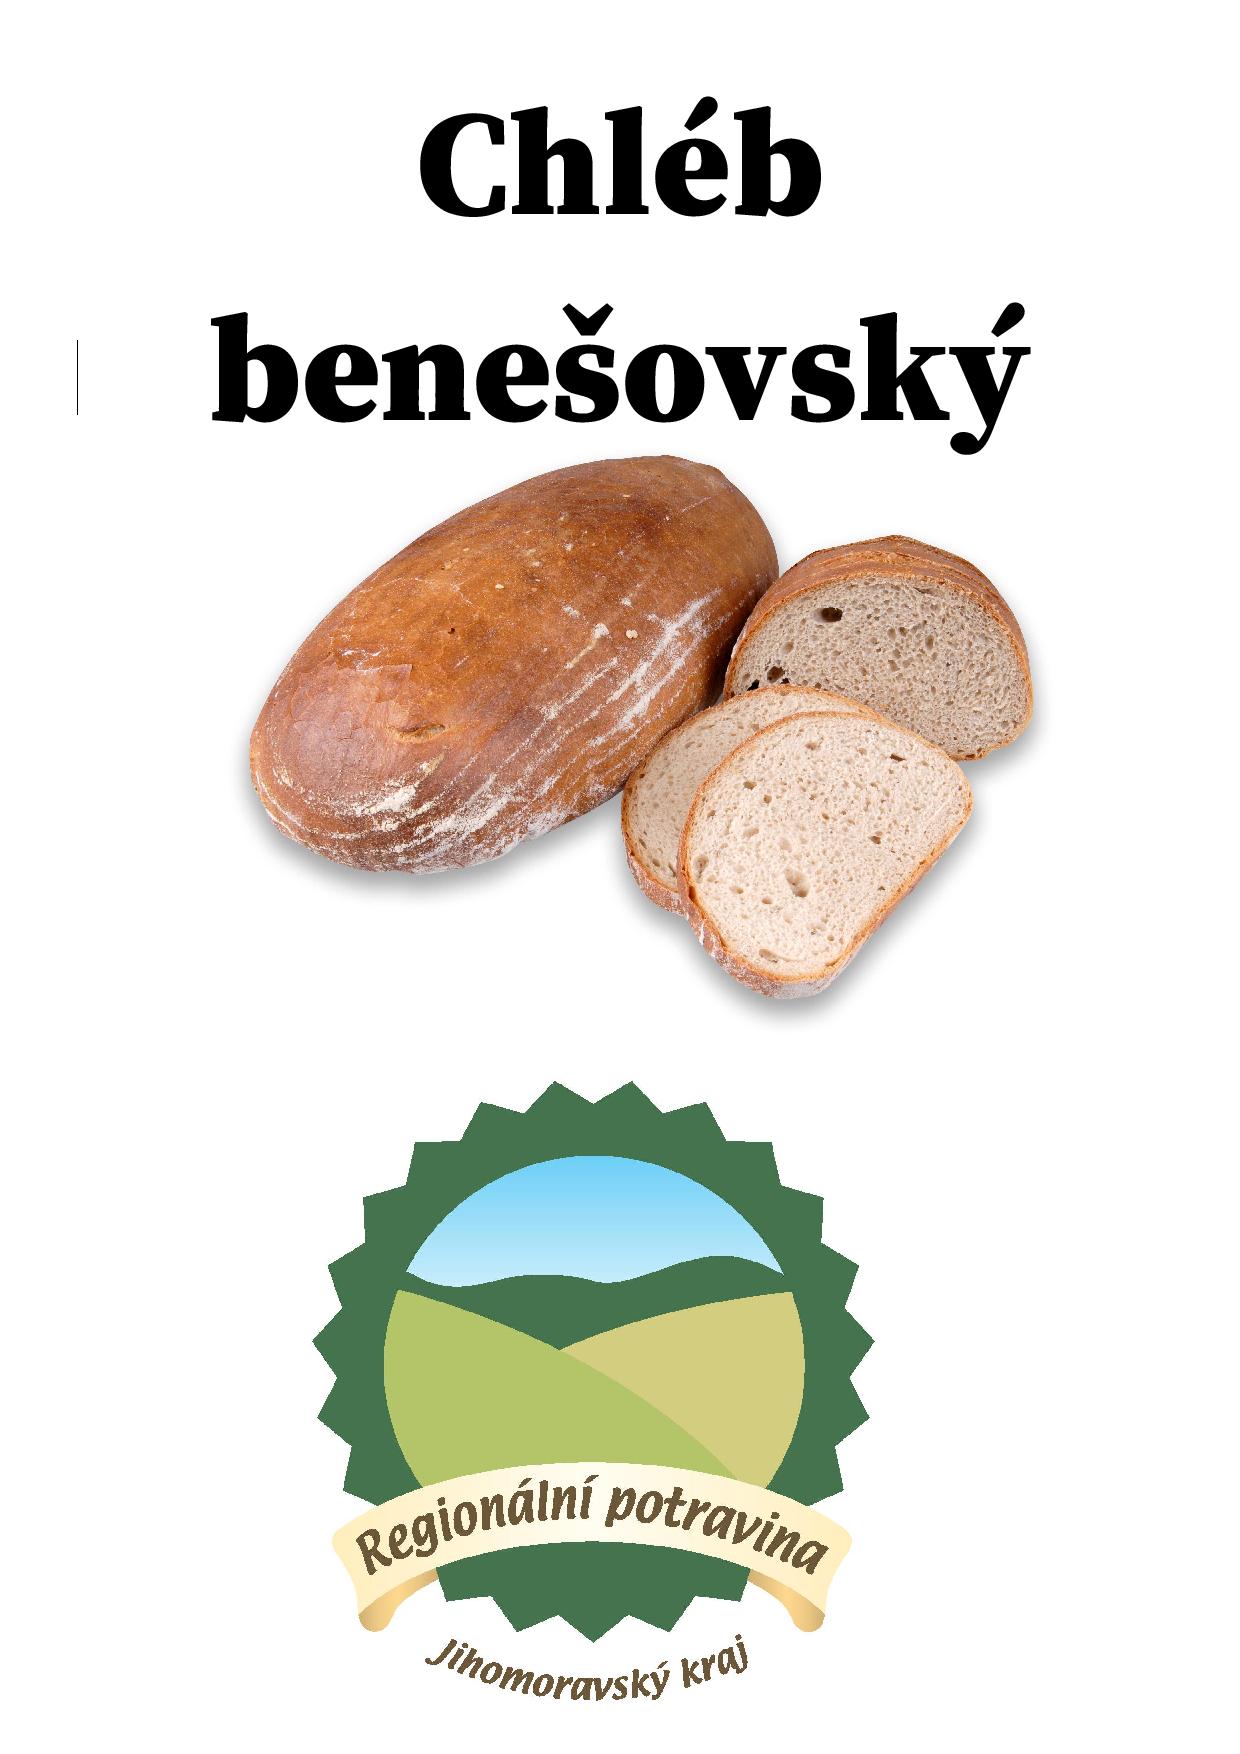 Regionální potravina Chléb benešovský